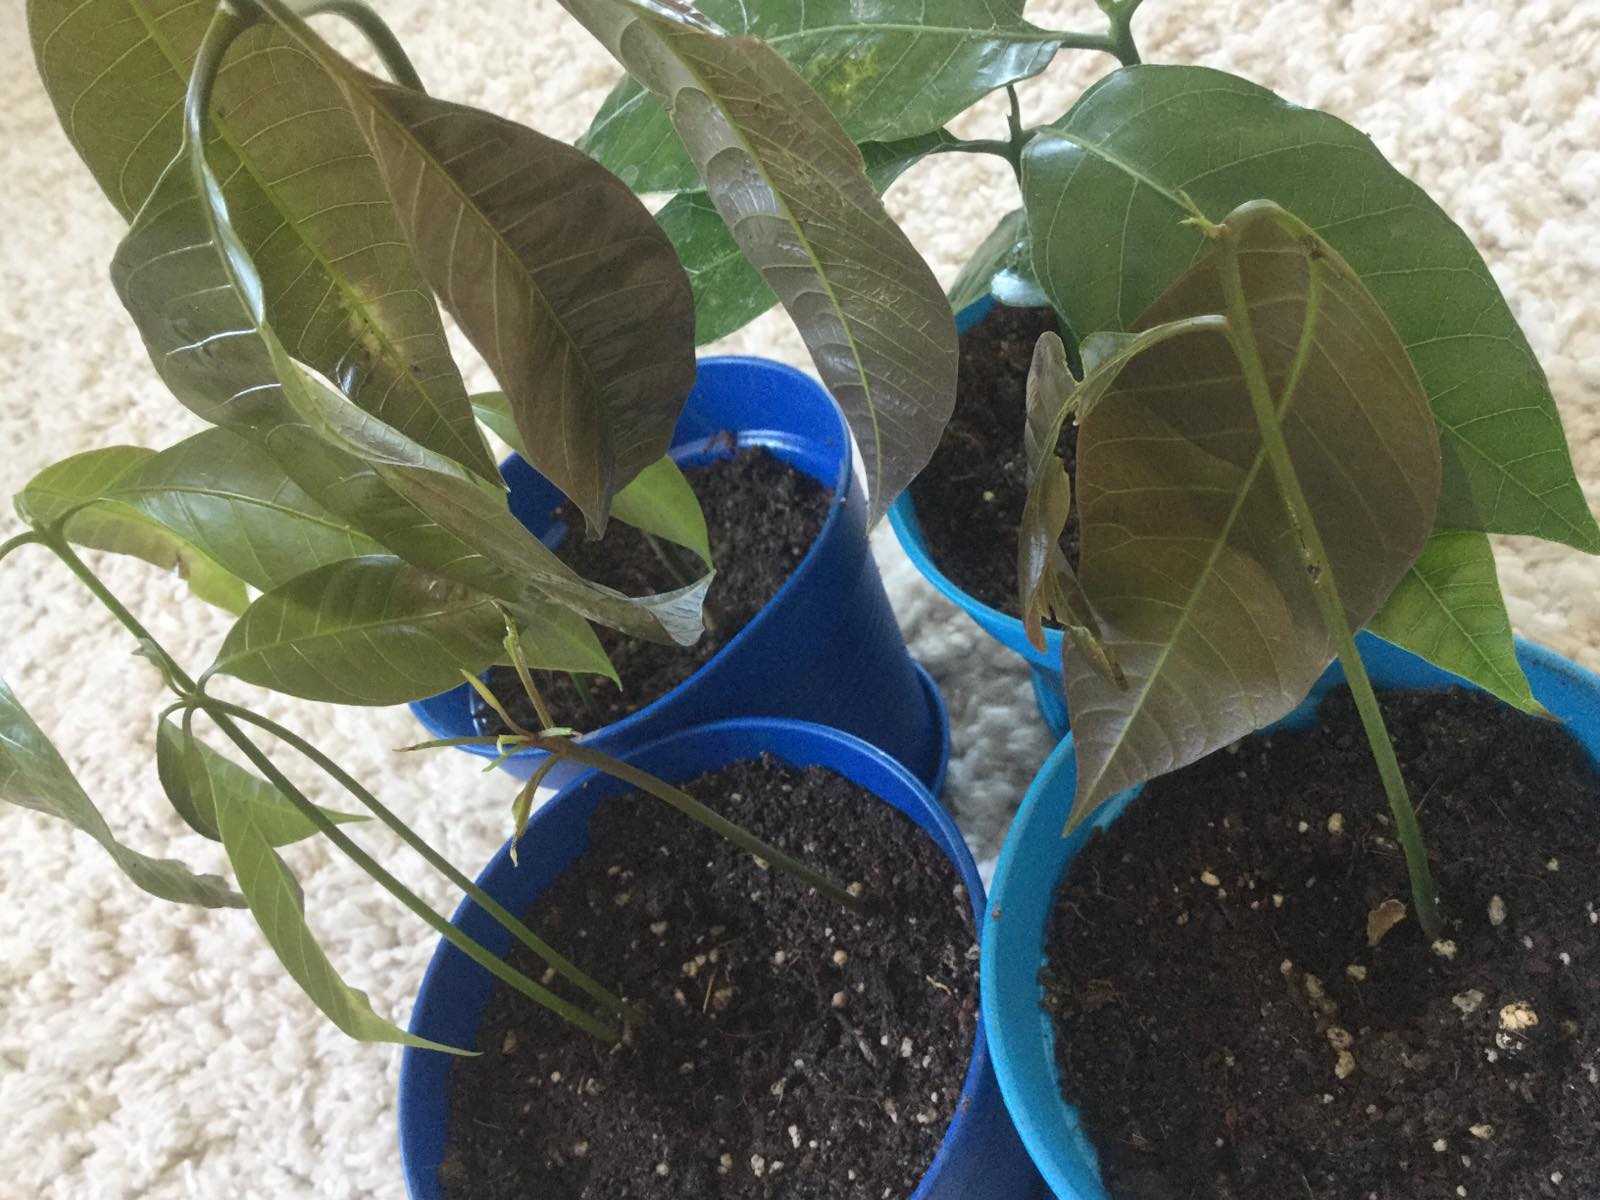 Выращивание манго из косточки в домашних условиях